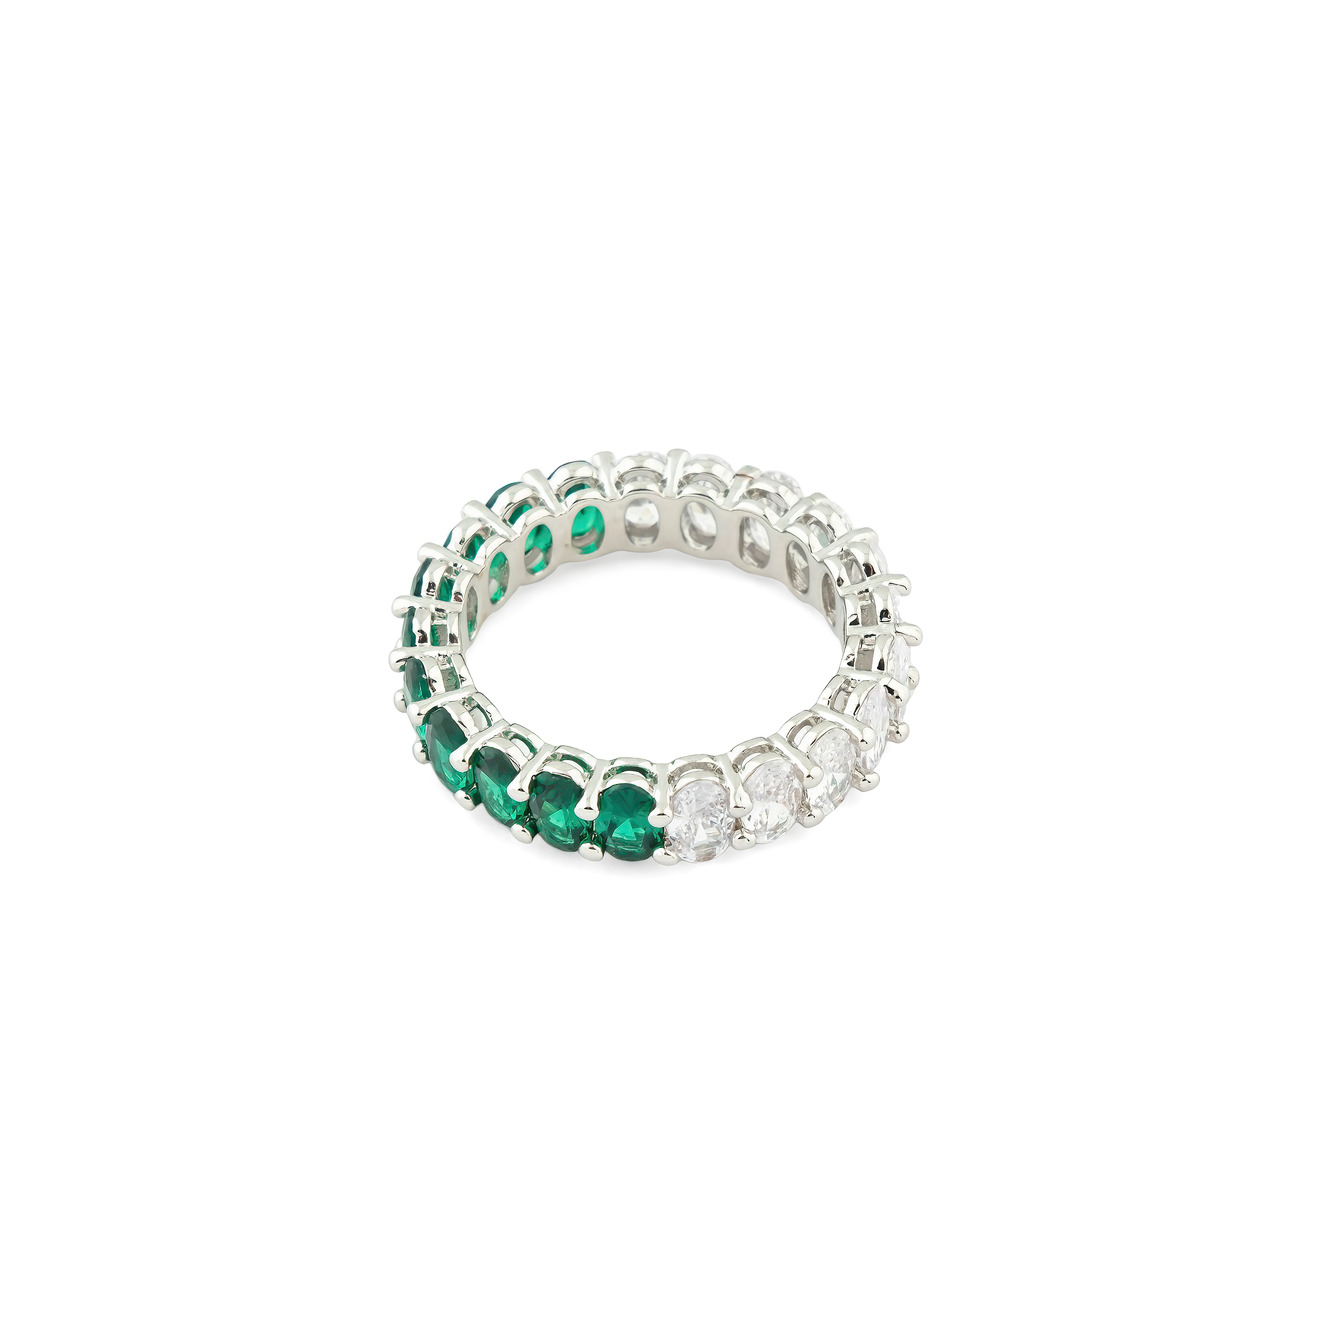 Herald Percy Серебристое кольцо с овалами белых и зеленых кристаллов